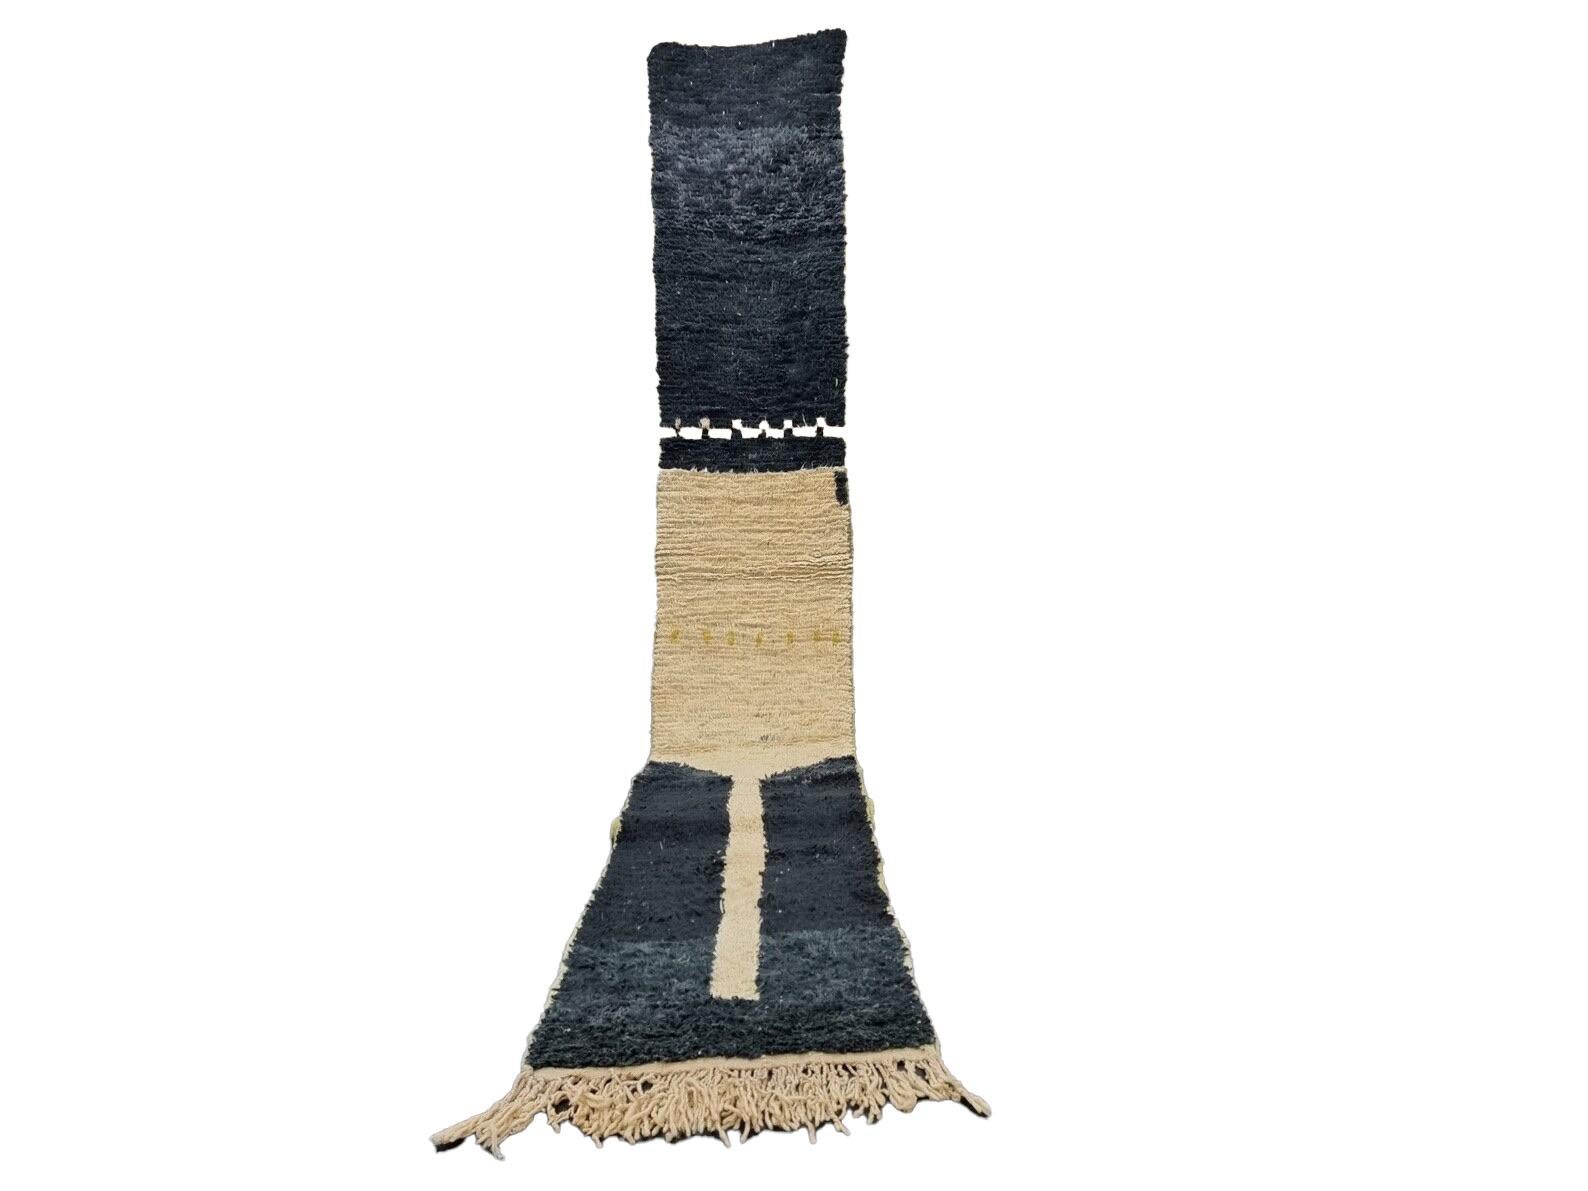 Tapis Boujad marocain tissé à la main en laine de mouton naturelle et douce, présentant des motifs géométriques noirs et beiges mêlant les cultures arabe et berbère du Maroc. Les couleurs sont fabriquées à partir de colorants naturels.

Largeur : 2